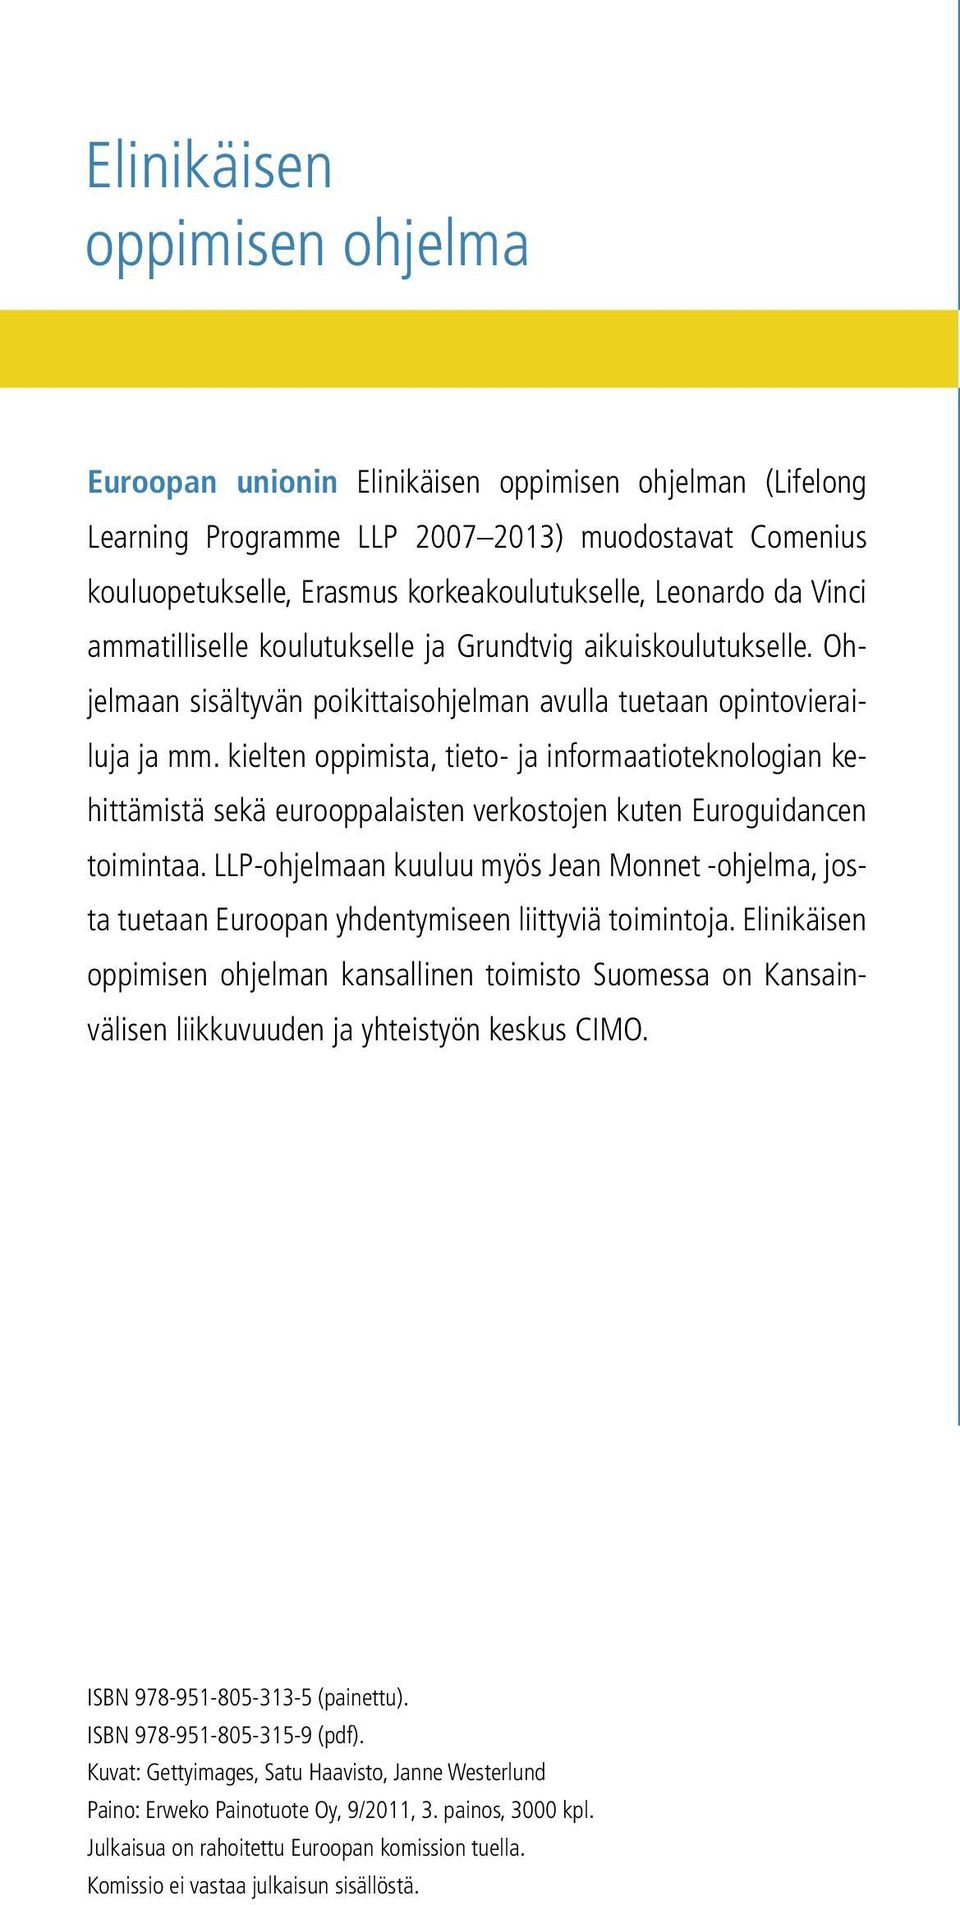 kielten oppimista, tieto- ja informaatioteknologian kehittämistä sekä eurooppalaisten verkostojen kuten Euroguidancen toimintaa.